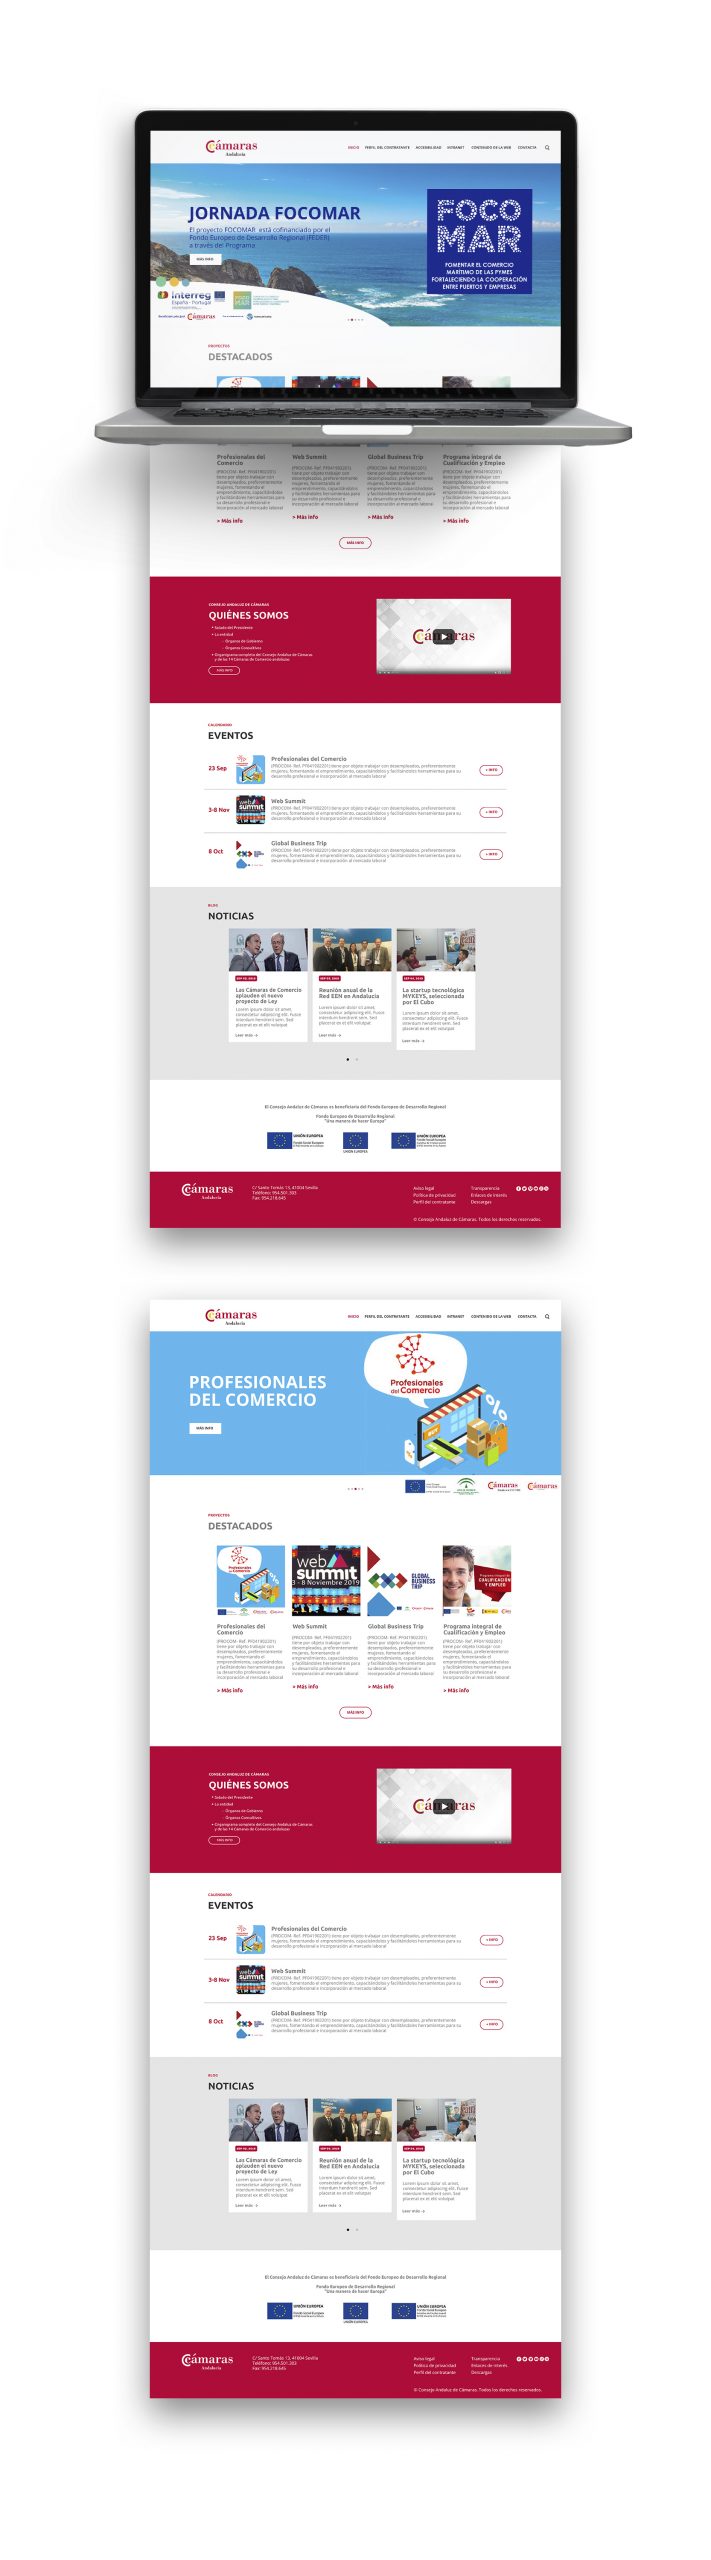 Diseño Web del Consejo Andaluz de Cámaras de Comercio